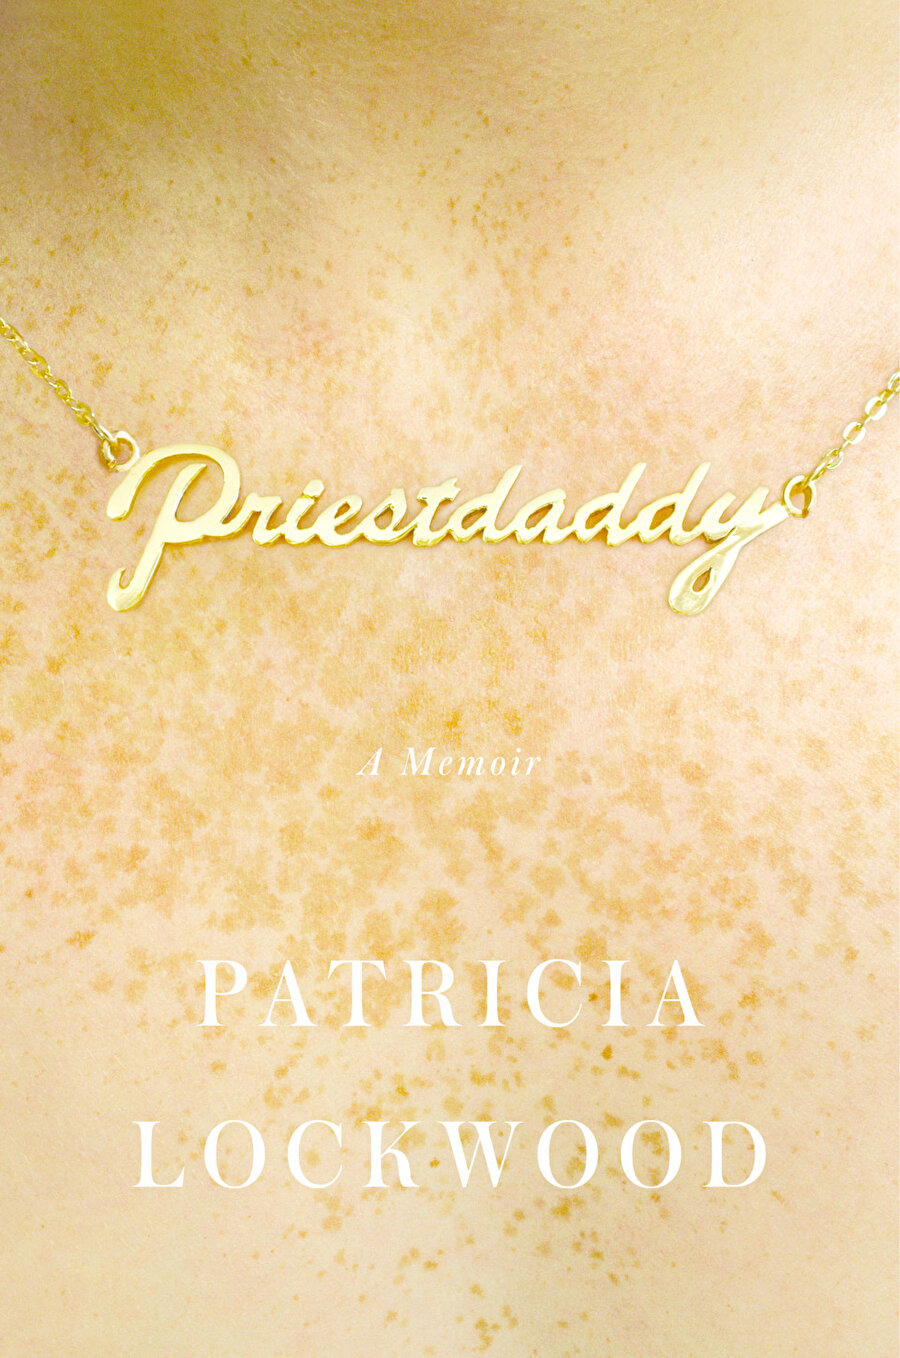 Patricia Lockwood
"Priestdaddy: A Memoir" 